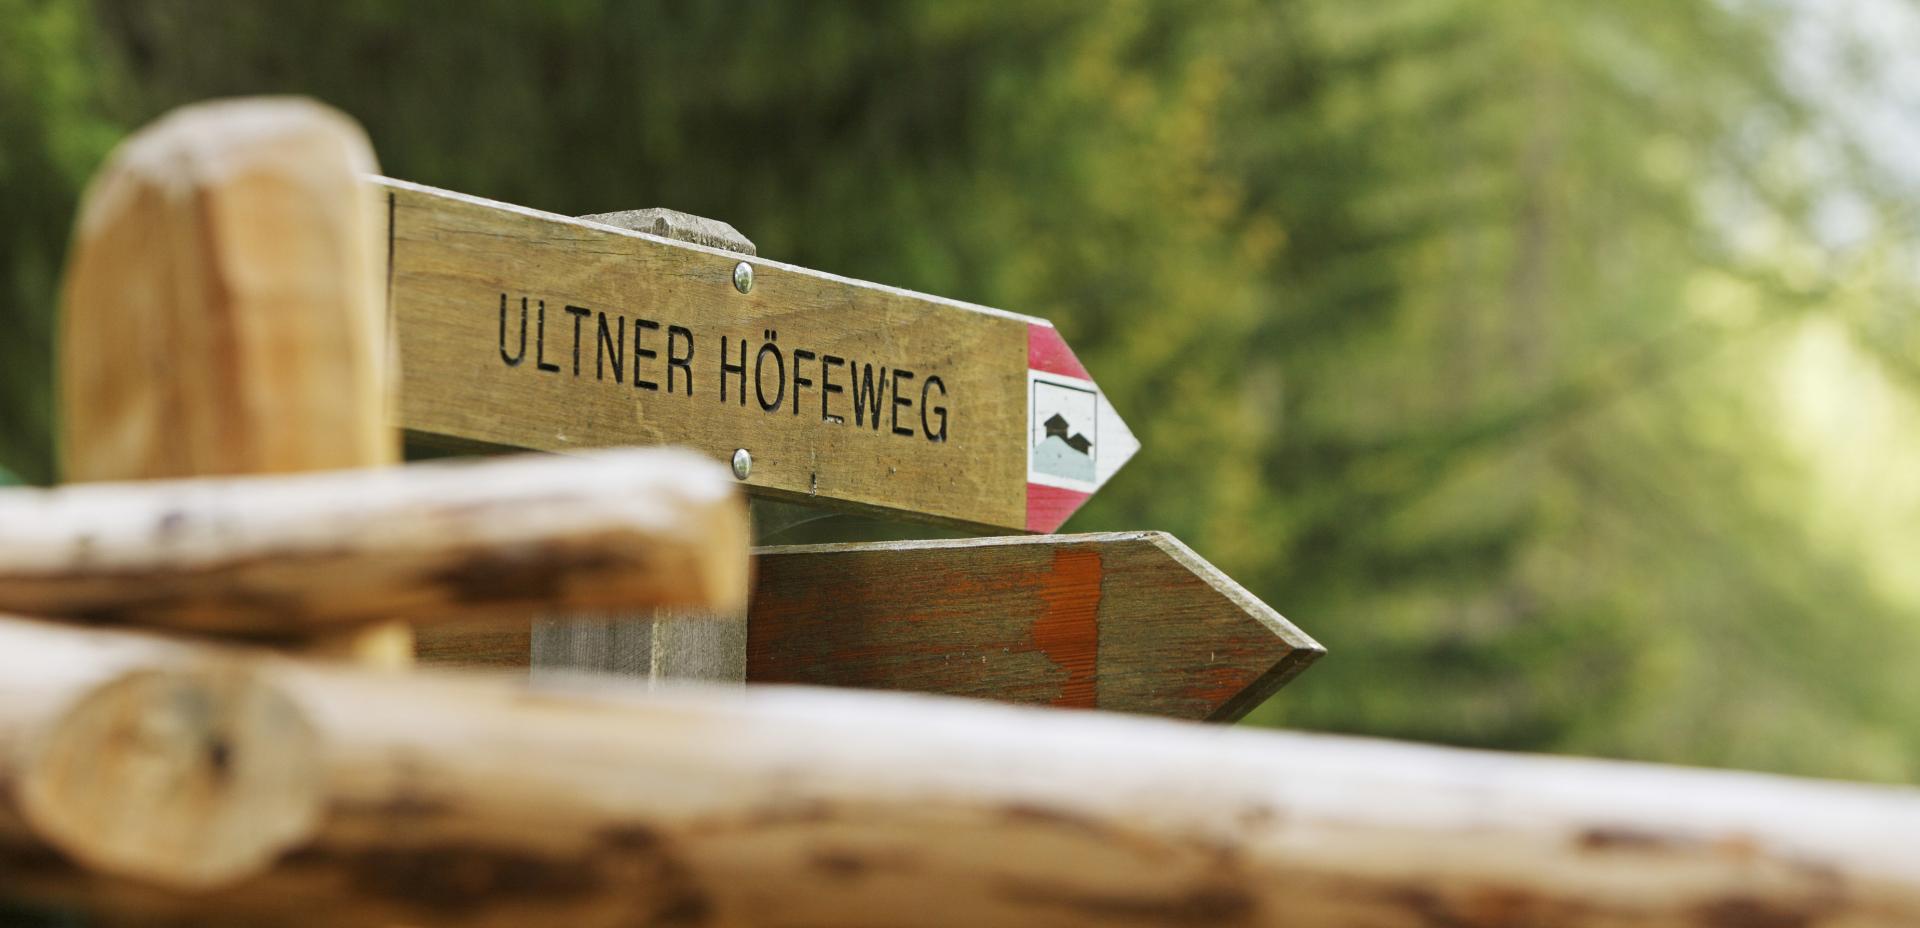 Ultner Höfeweg - Wegweiser